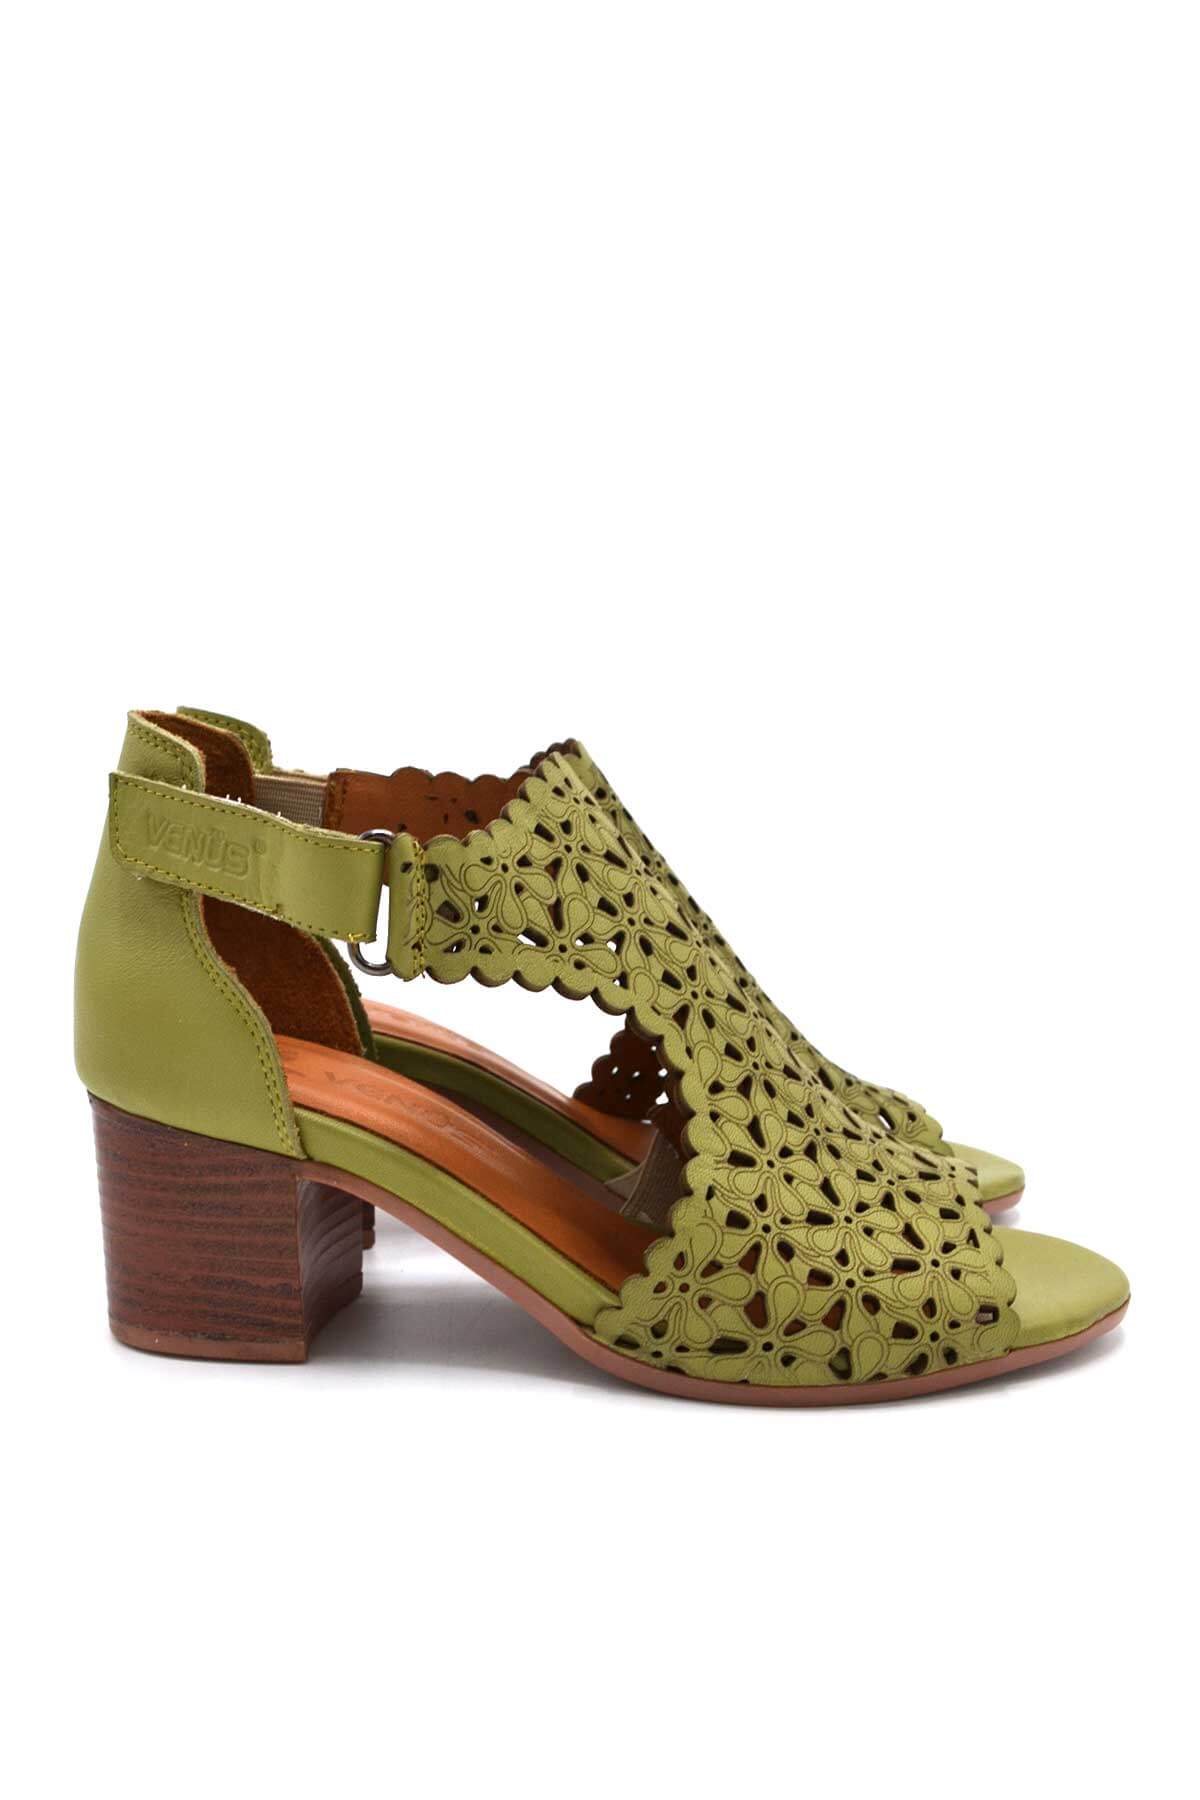 Kadın Topuklu Deri Sandalet Yeşil 1857215Y - Thumbnail